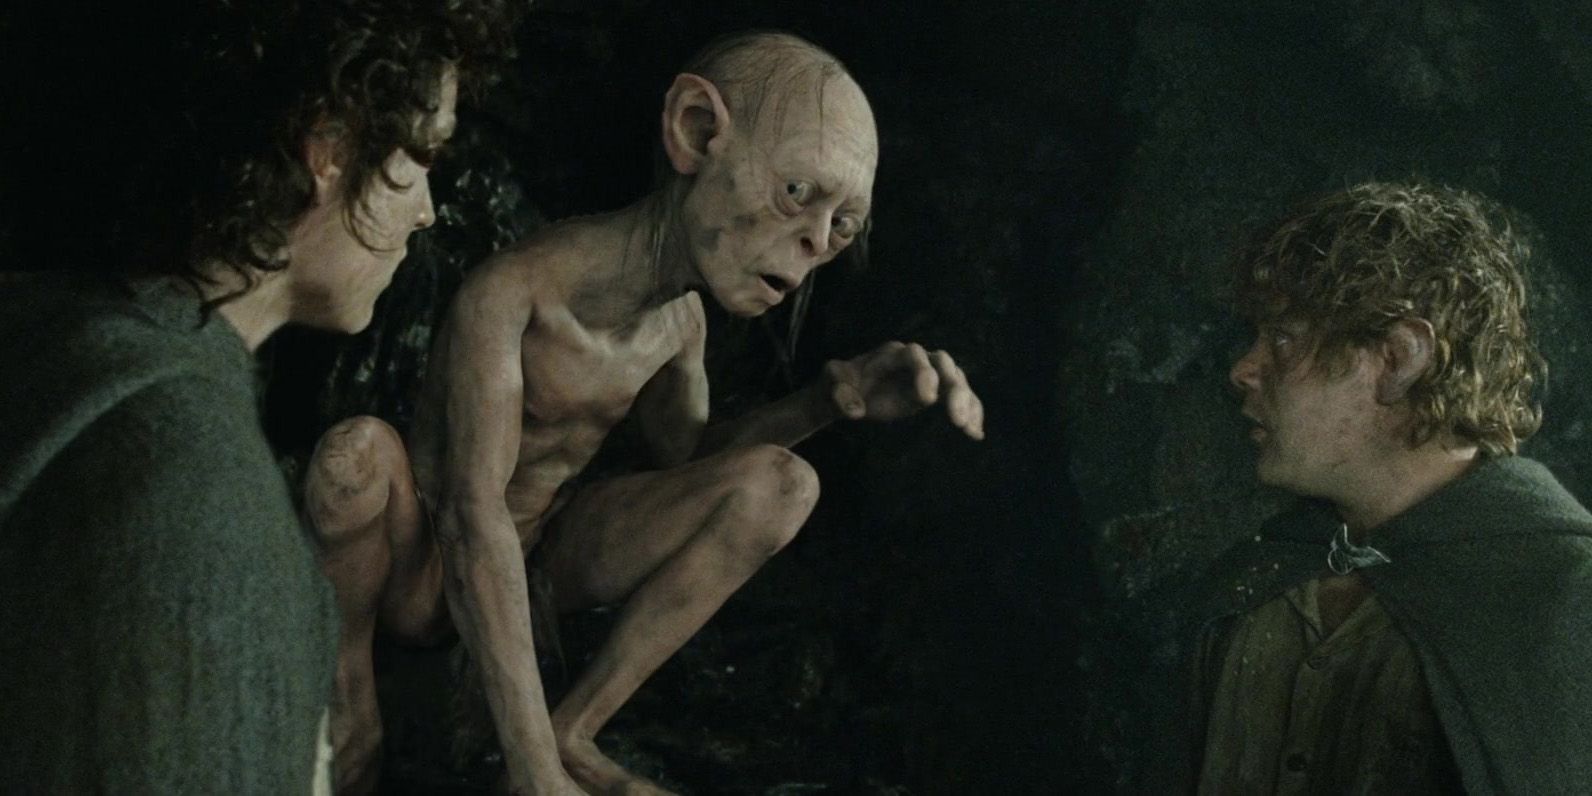 The Lord of the Rings: Gollum revela visual de Gandalf e mais